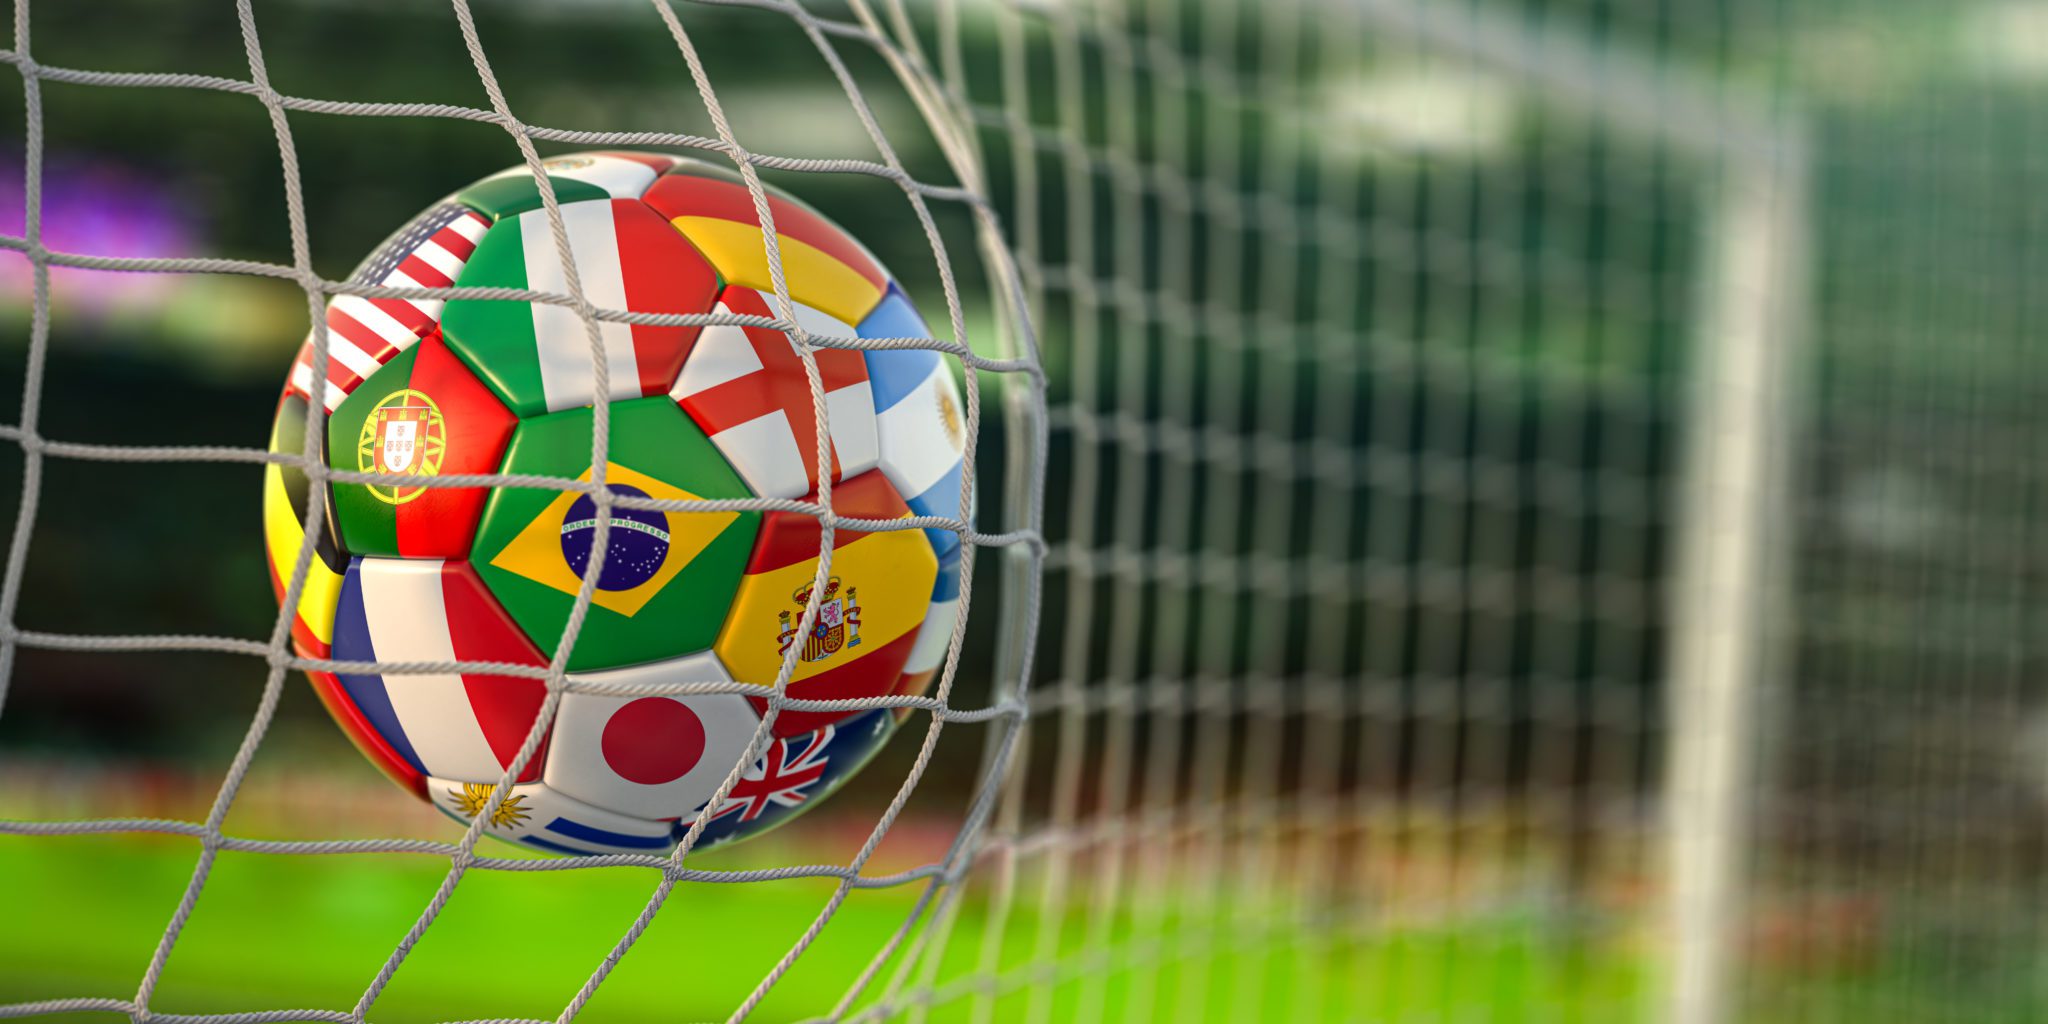 Copa do Mundo 2022: quando começa, onde vai ser, jogos do Brasil e mais